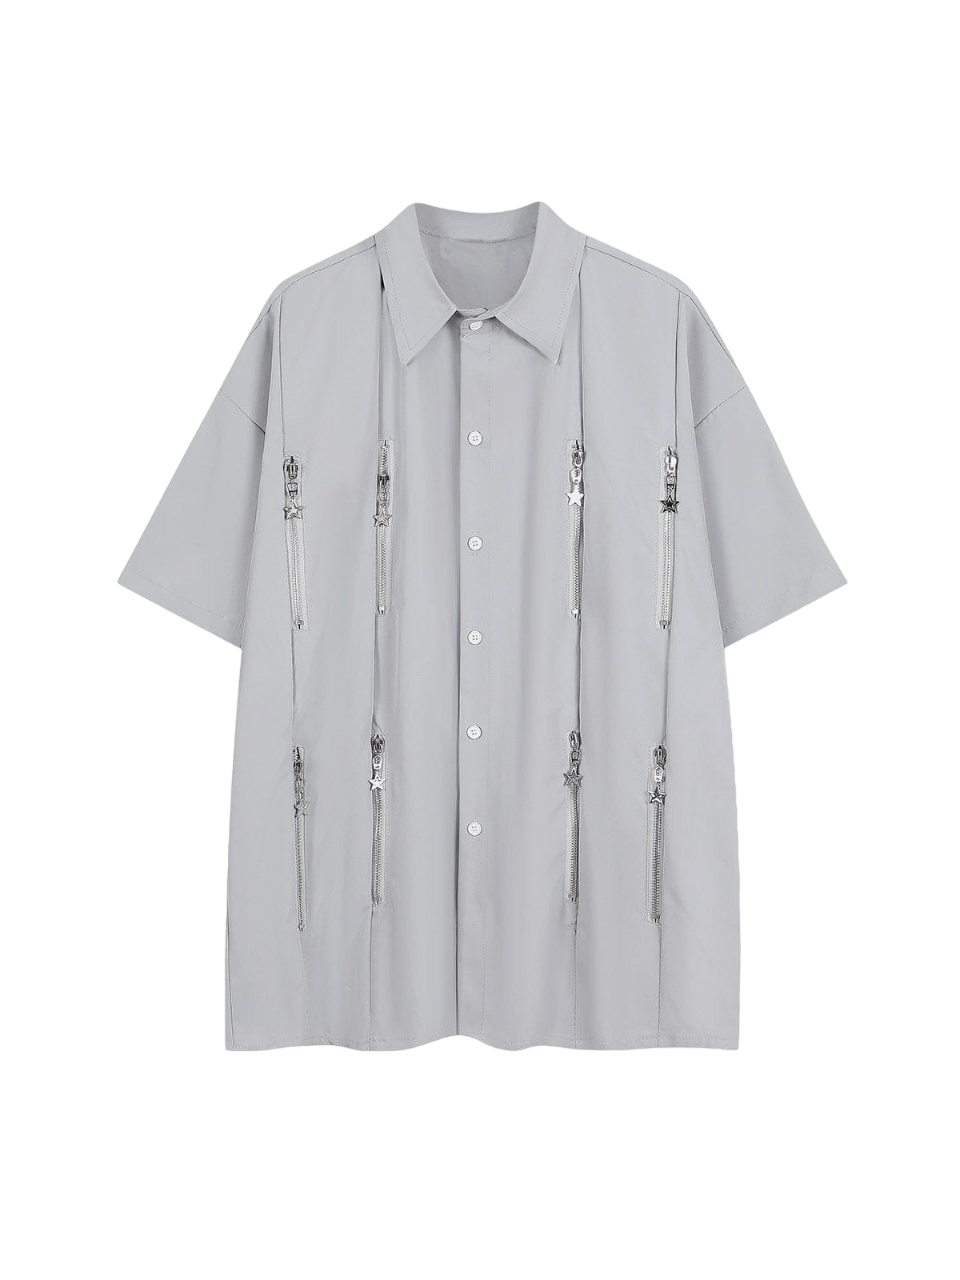 NB Star Zipper Short Sleeve Shirts